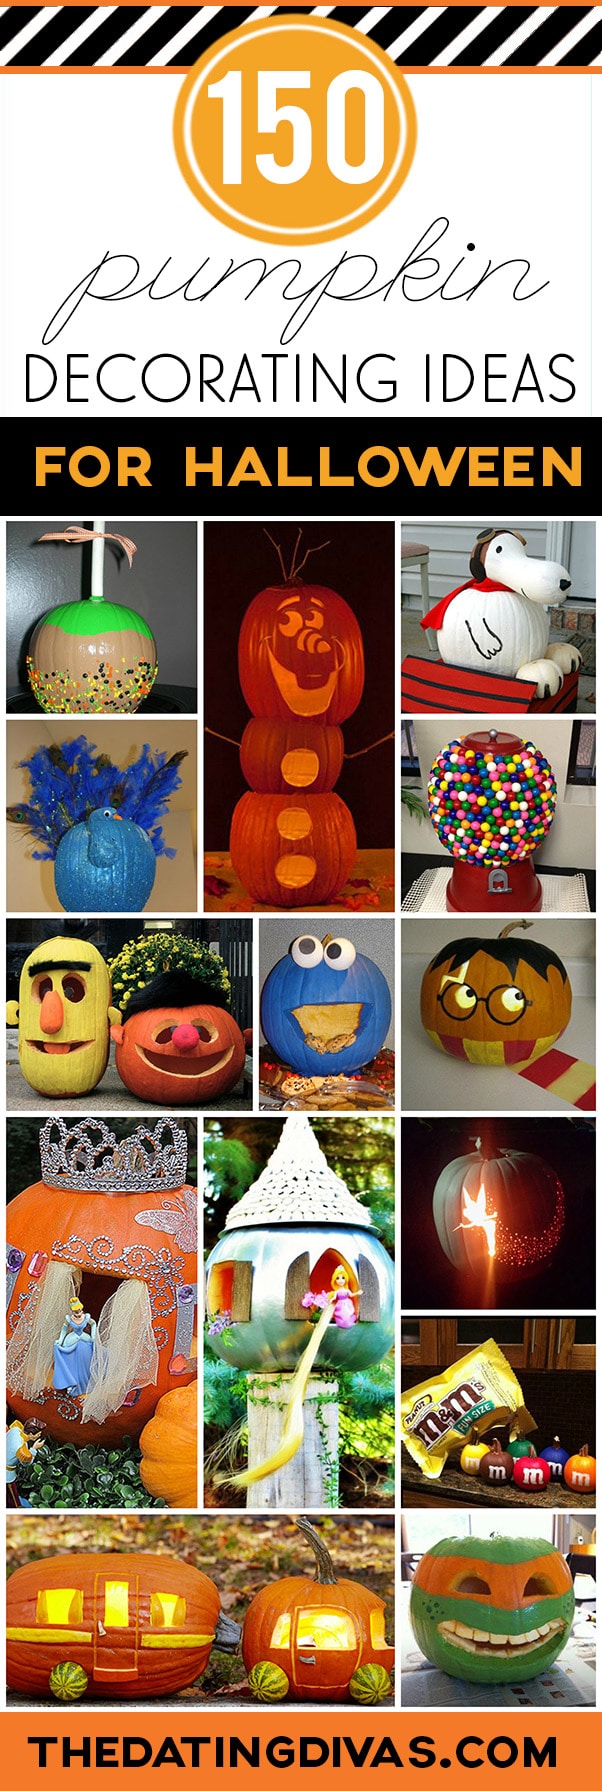 150 pumpkin decorating ideas - fun pumpkin designs for halloween